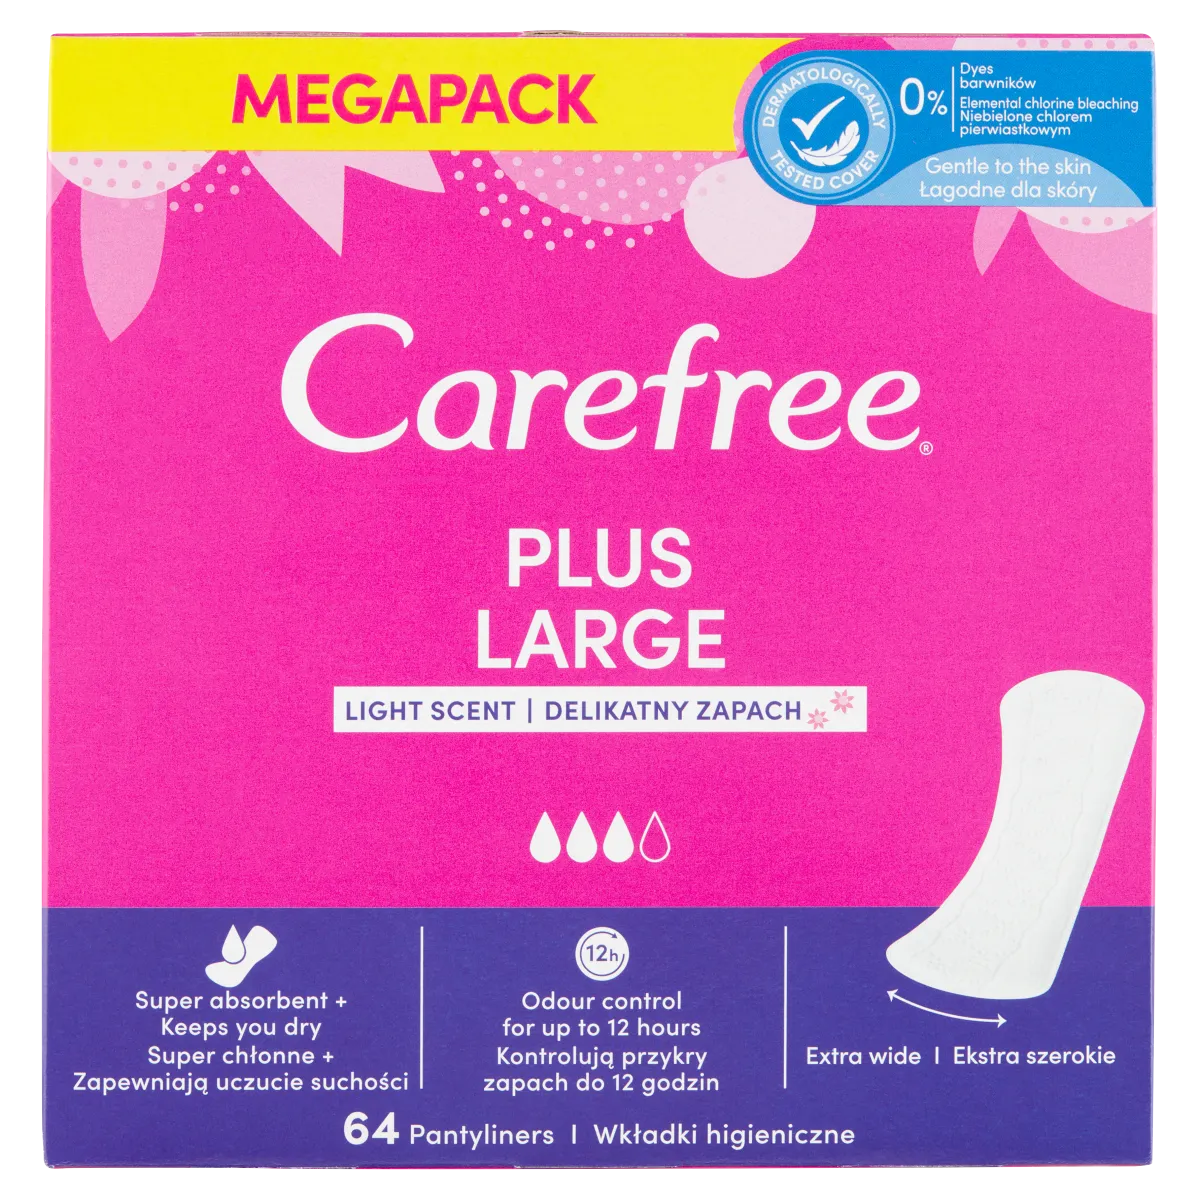 Carefree Plus Large duże wkładki higieniczne, 64 szt.